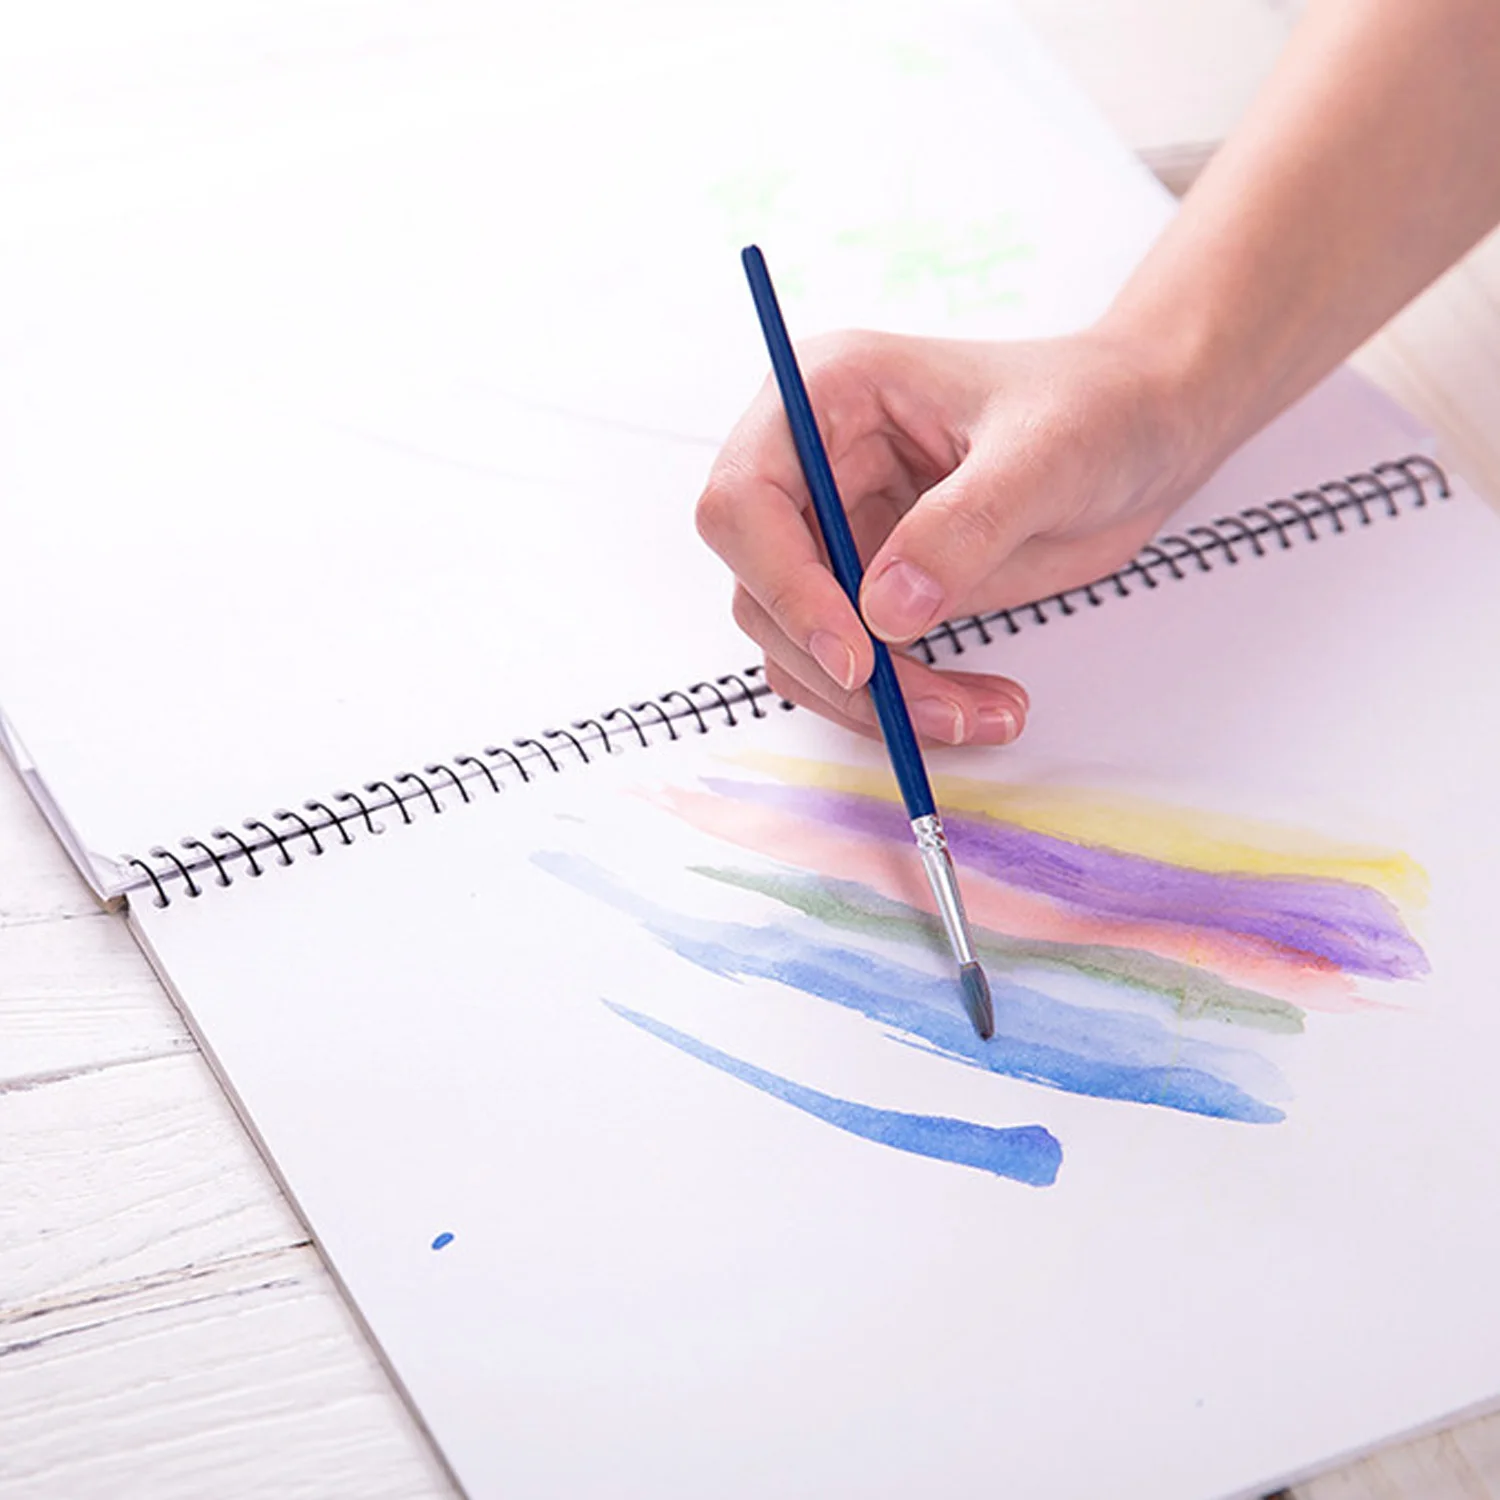 Cumpara online 24 de Culori 12ml Acuarelă, Vopsele de Ulei Vopsea Pigmenți Set pictate manual pentru Studenții Pictura Desen Graffiti de Artă | Noi www.magazinuldan.ro